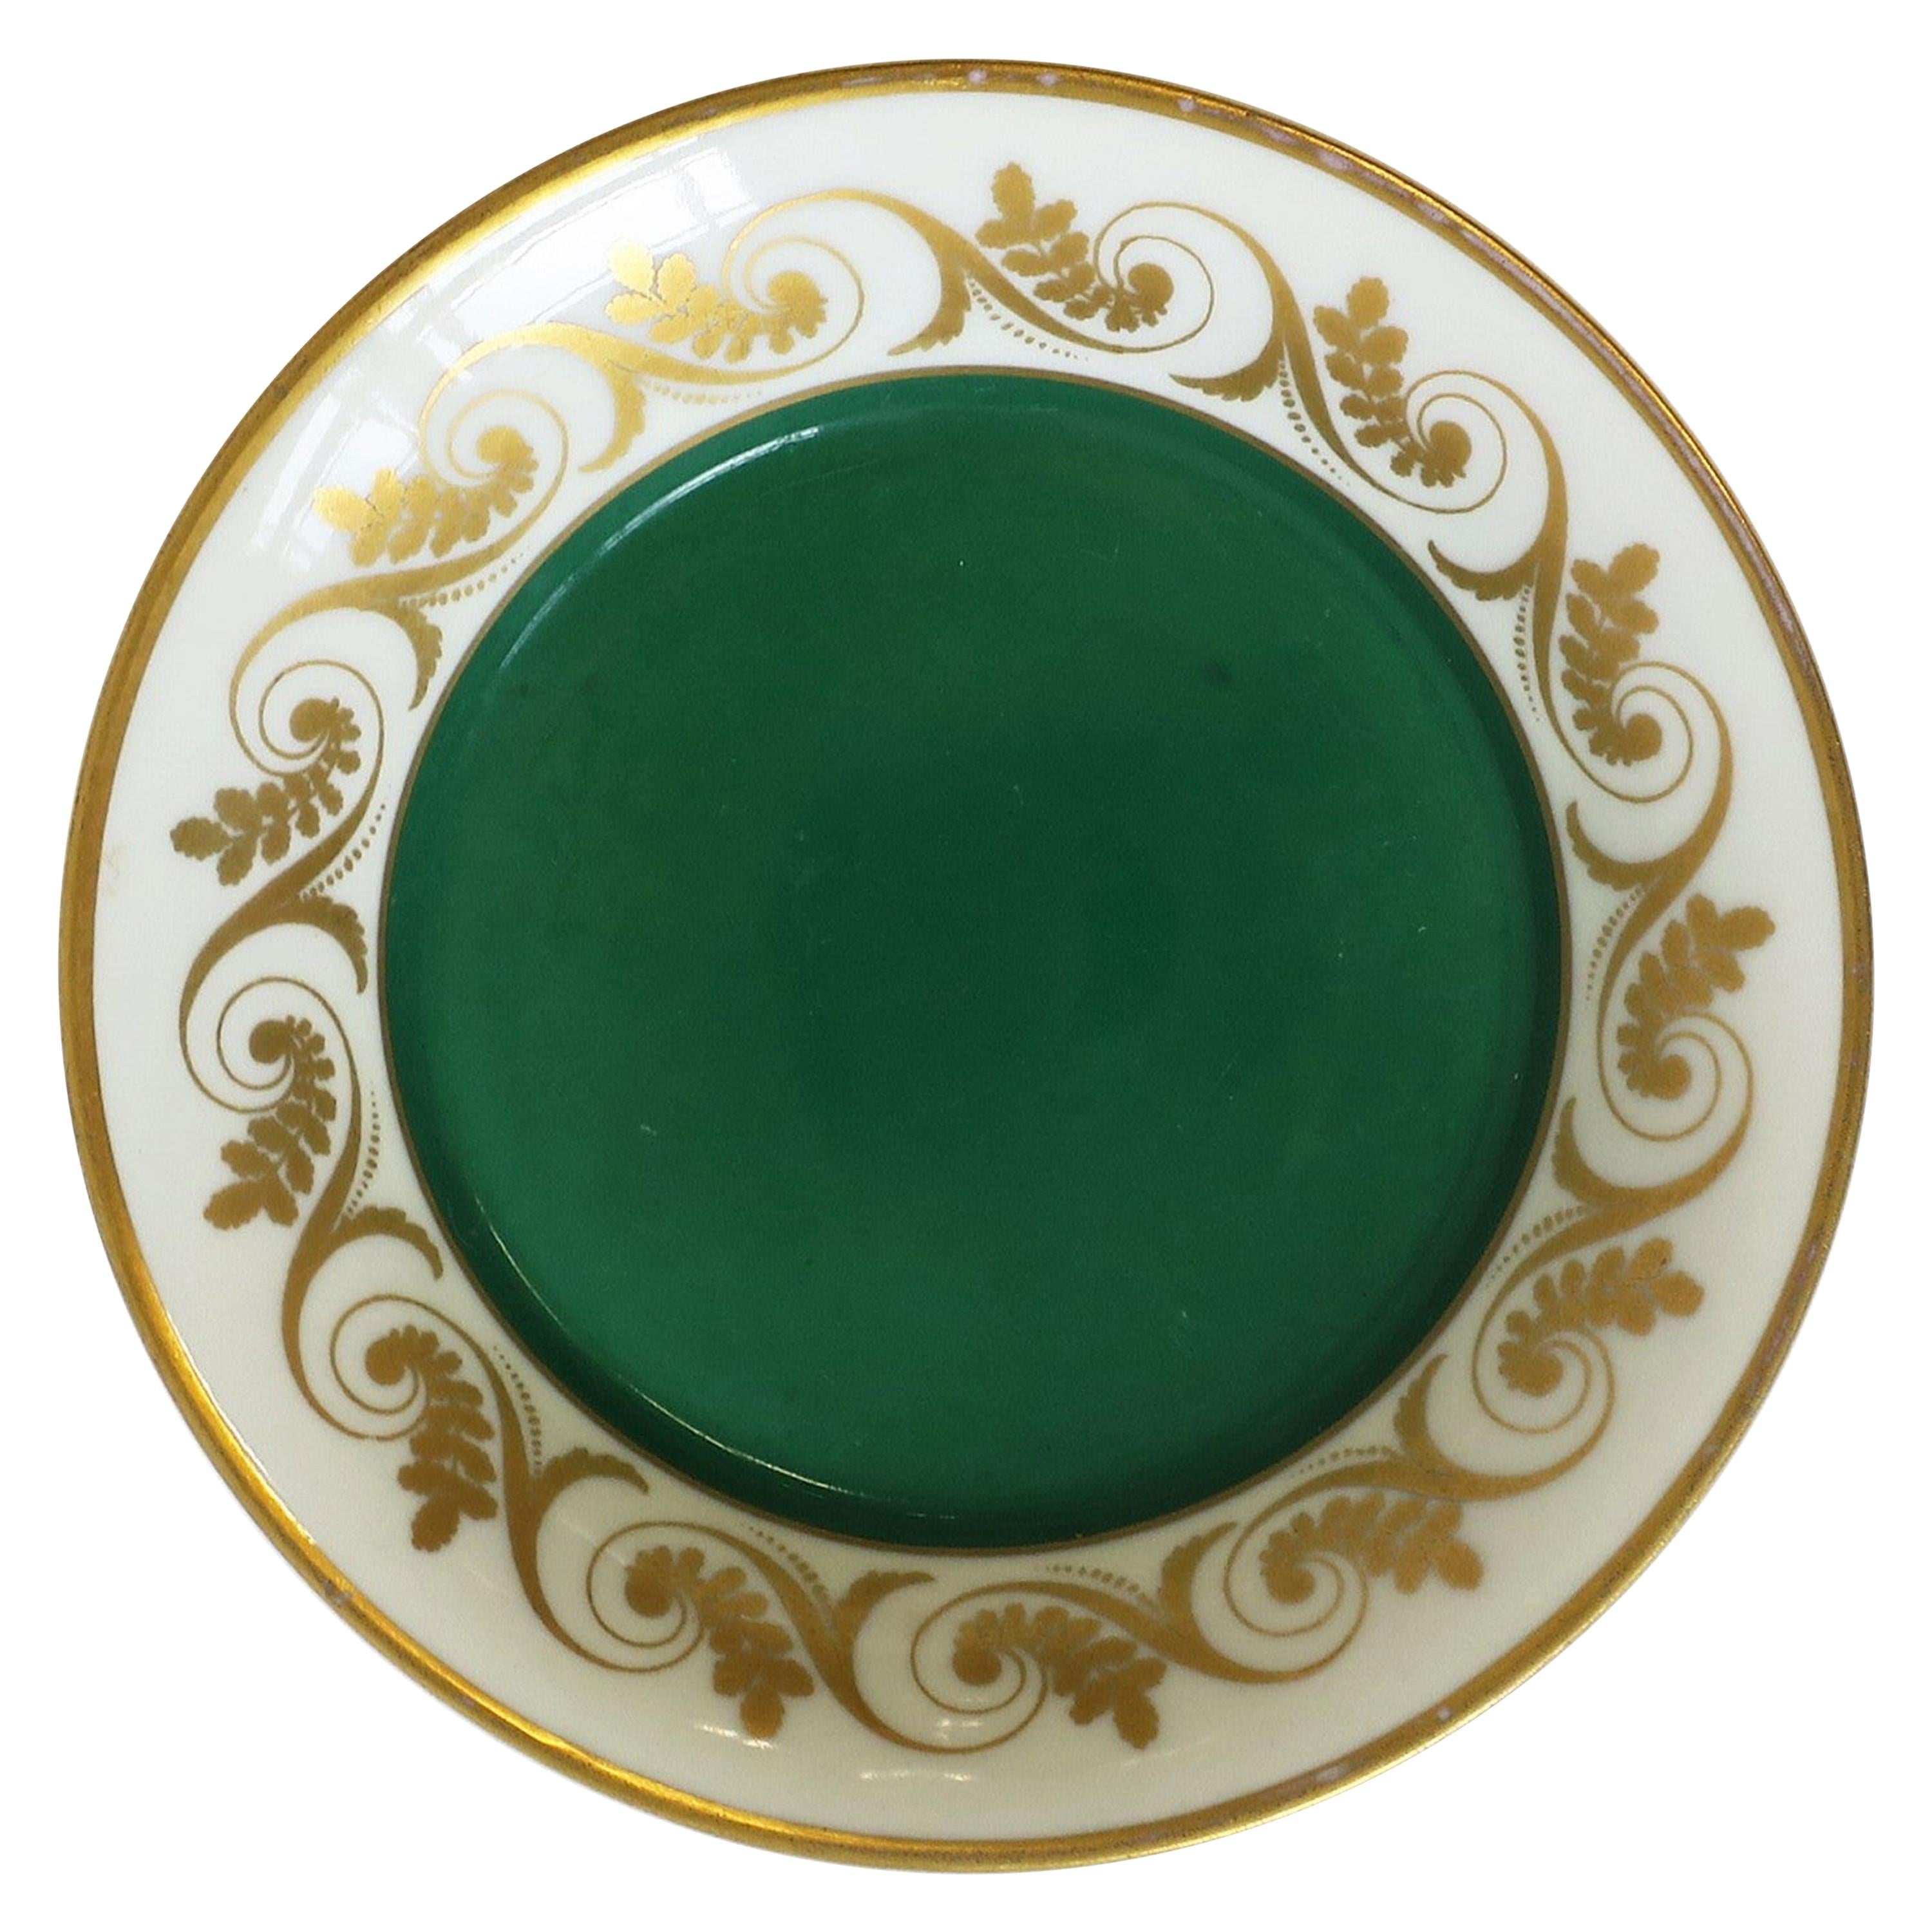 Richard Ginori Italian Porcelain Jewelry Dish in Gold and Green